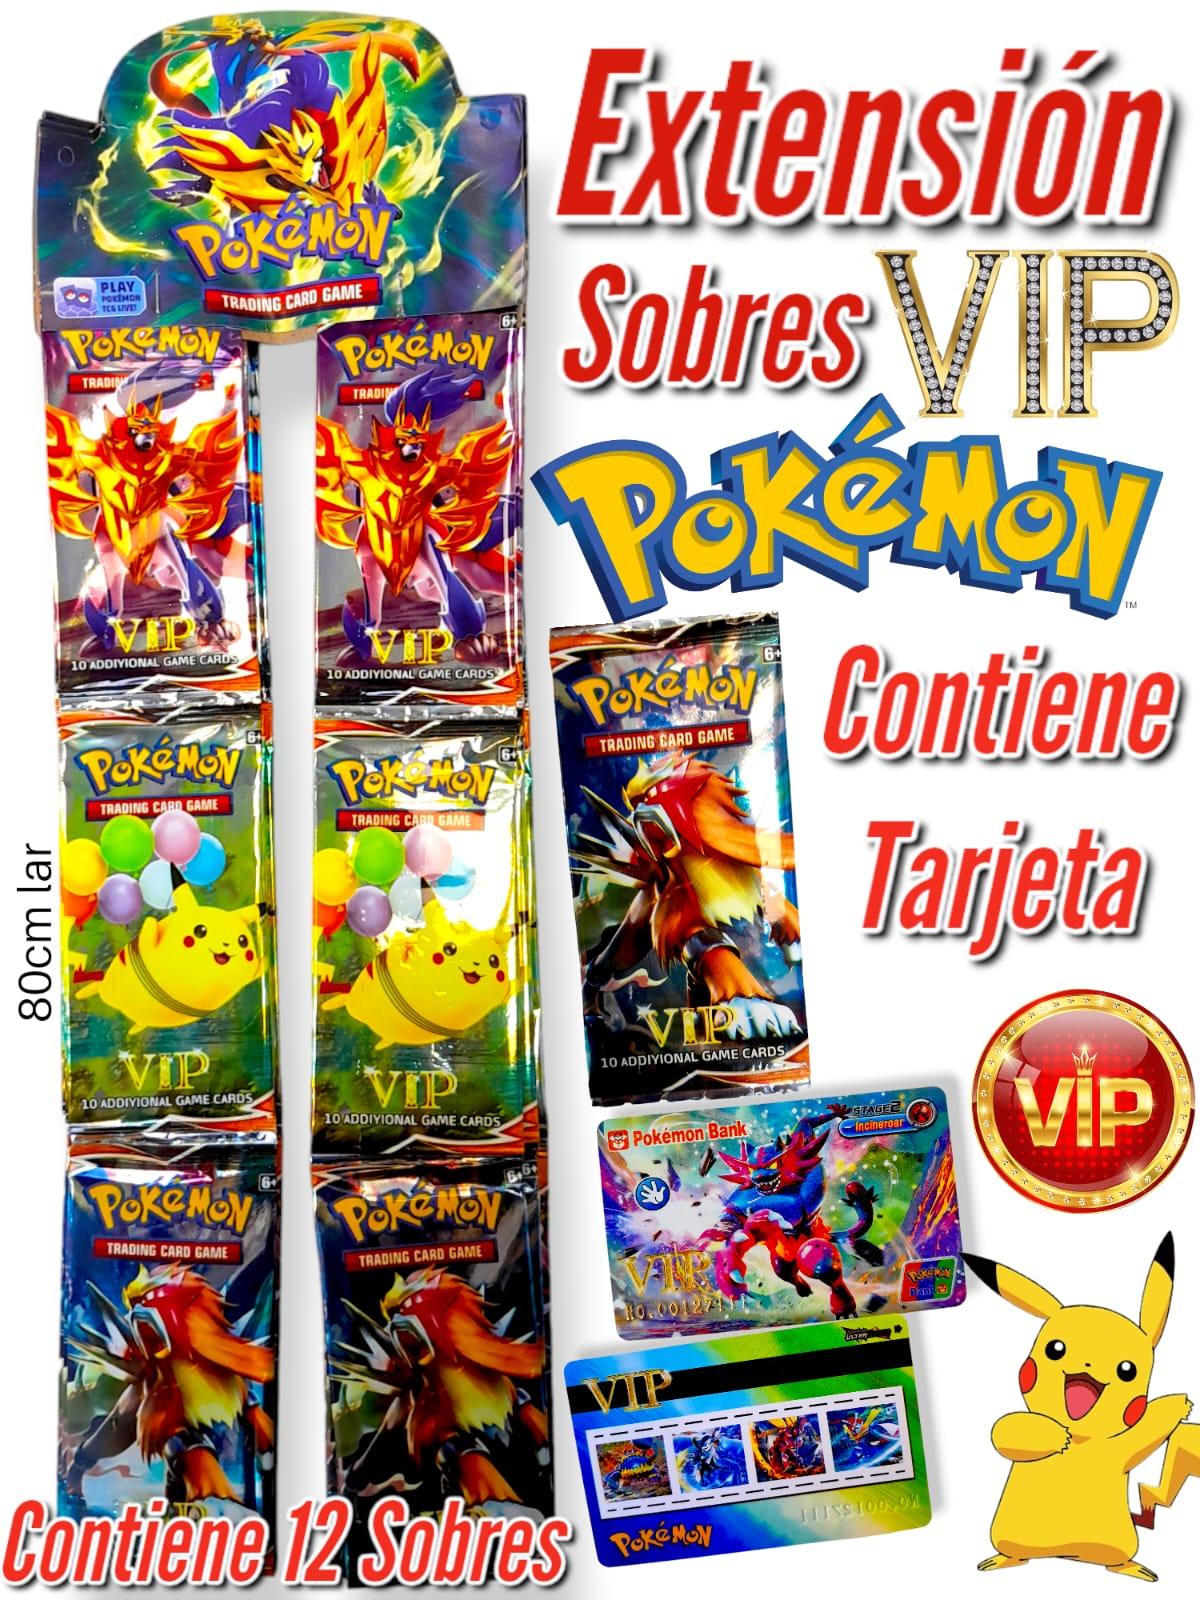 Tarjeta plastica VIP Pokemon en sobre